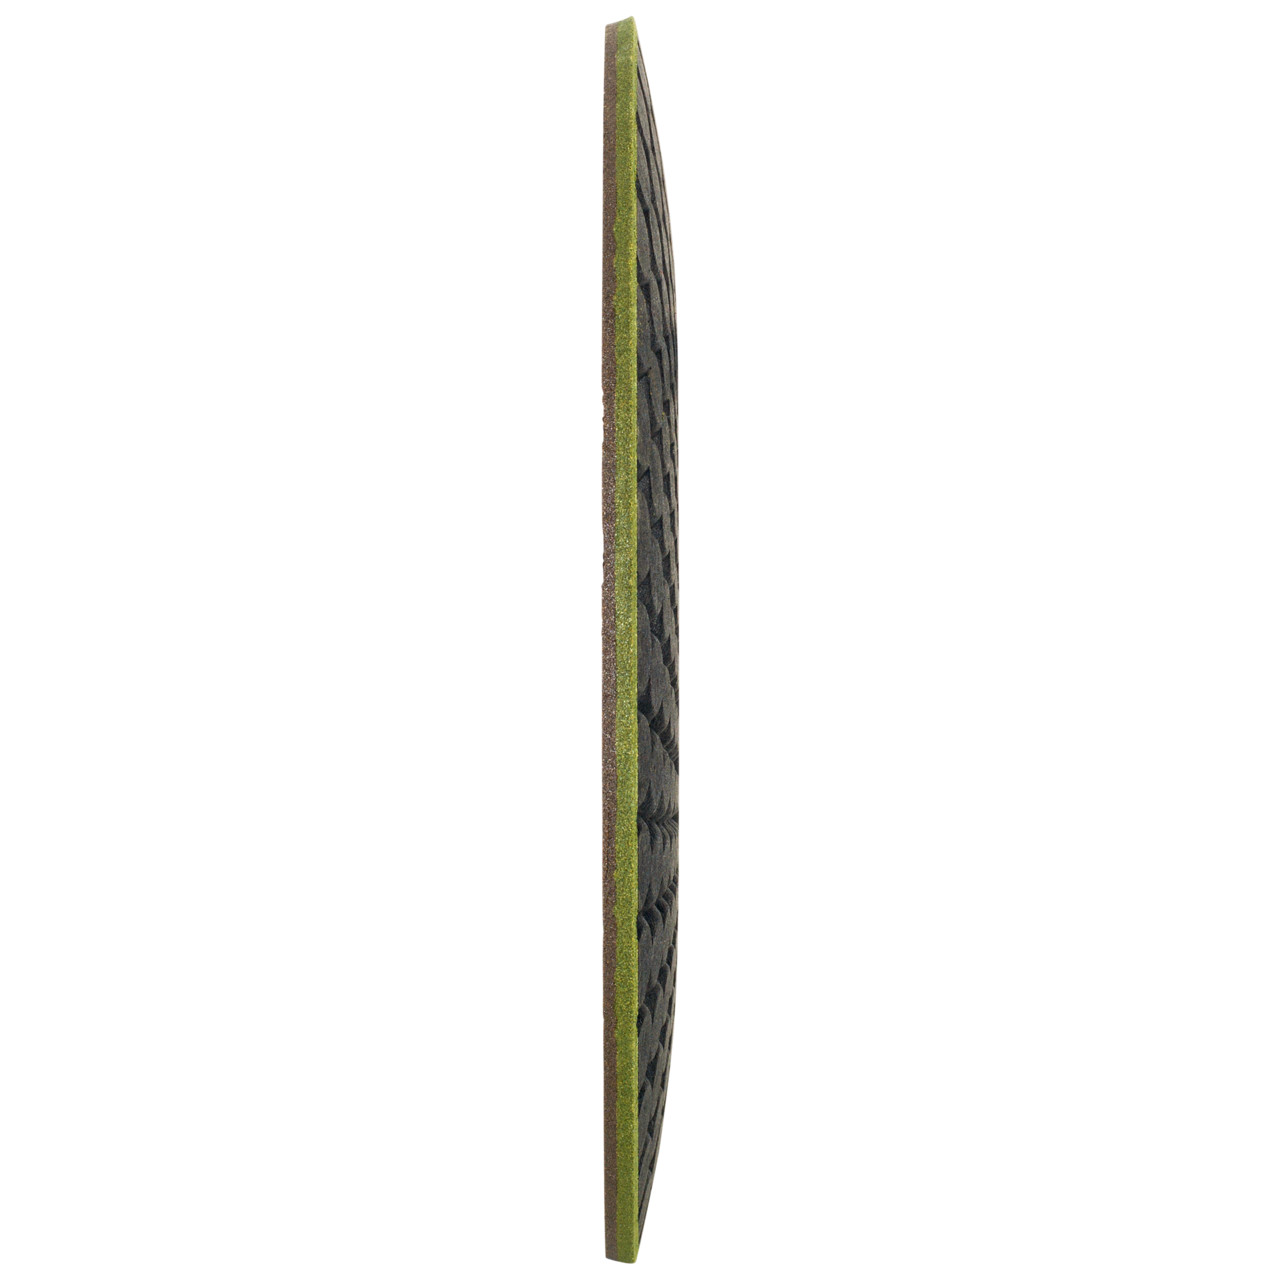 TYROLIT RONDELLER DxH 178x22,23 Per pietra, forma: 29RON (Rondeller®), Art. 908220